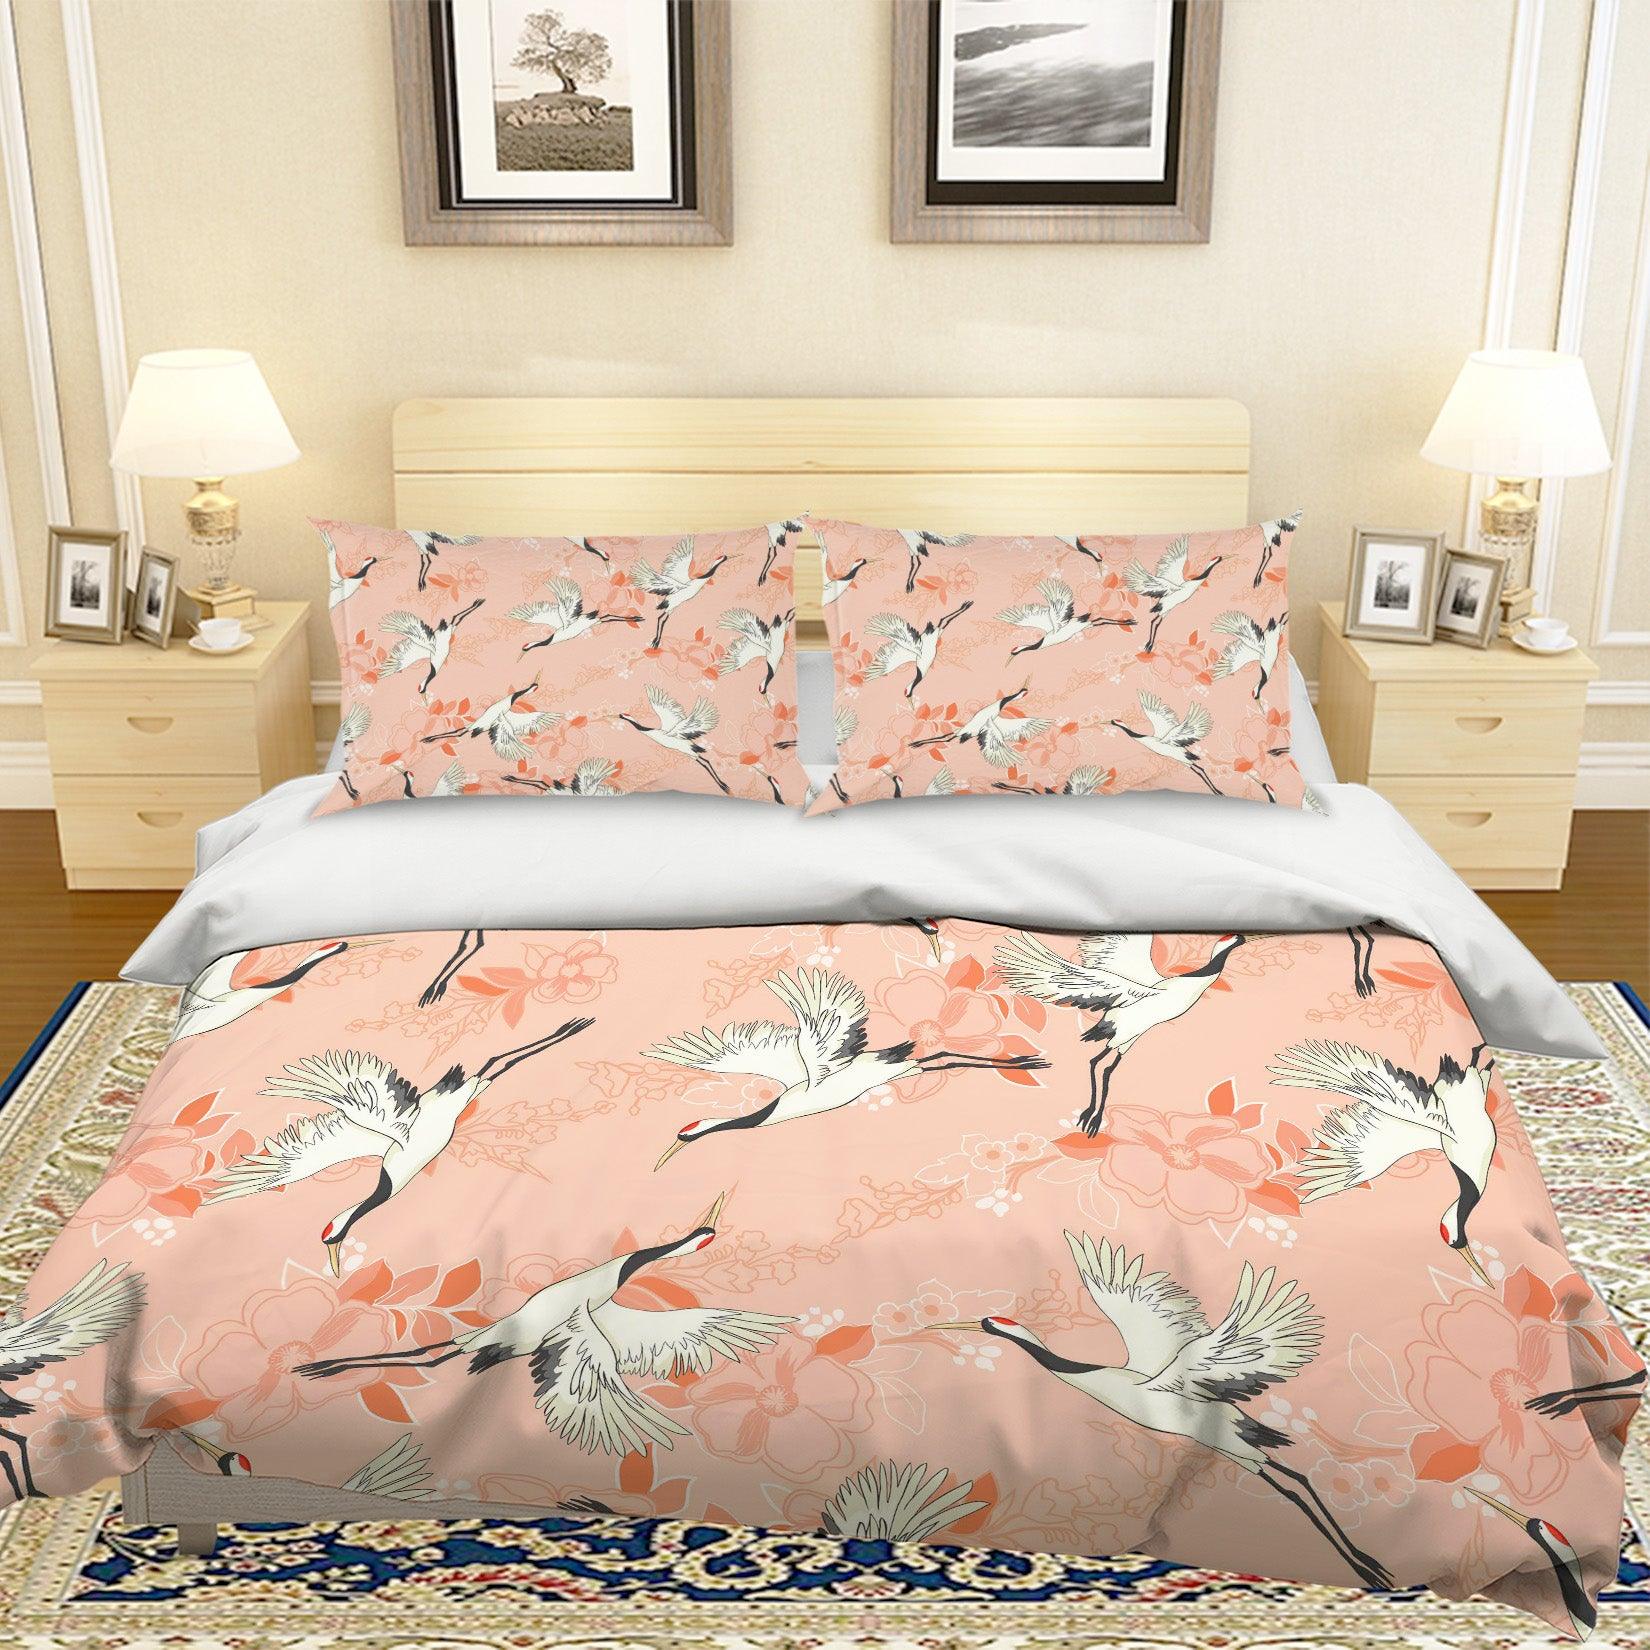 3D White Crane Quilt Cover Set Bedding Set Pillowcases 19- Jess Art Decoration